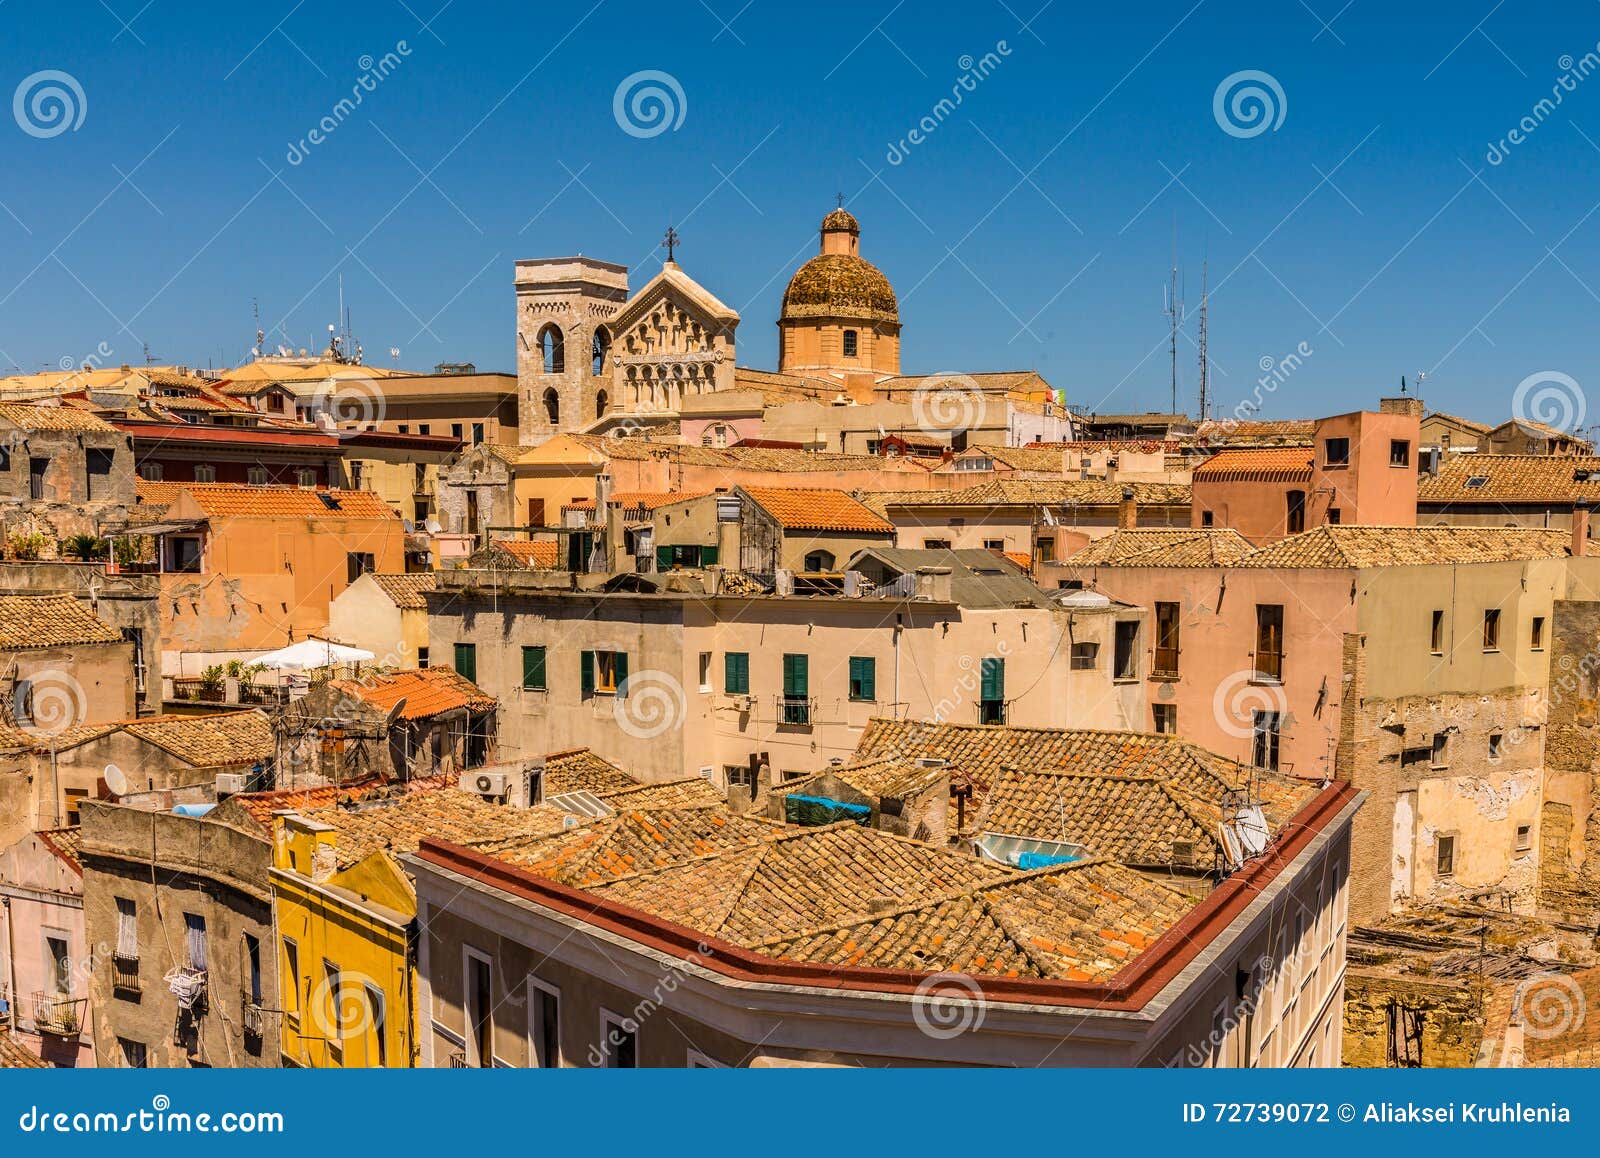 roofs of cagliari in sardegna